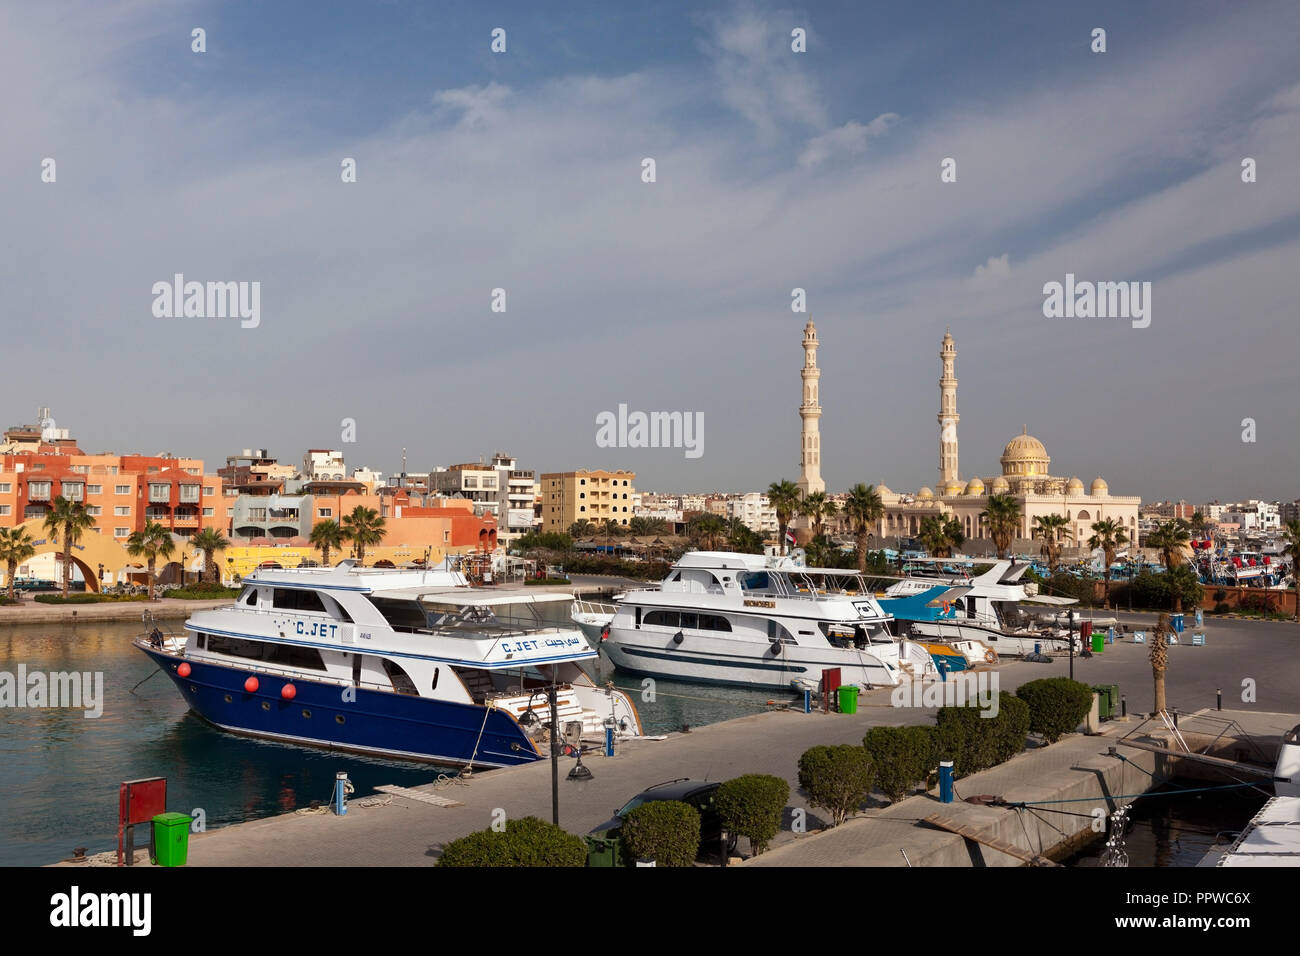 Los barcos de buceo en el puerto deportivo de Hurghada, Mar Rojo, Egipto Foto de stock